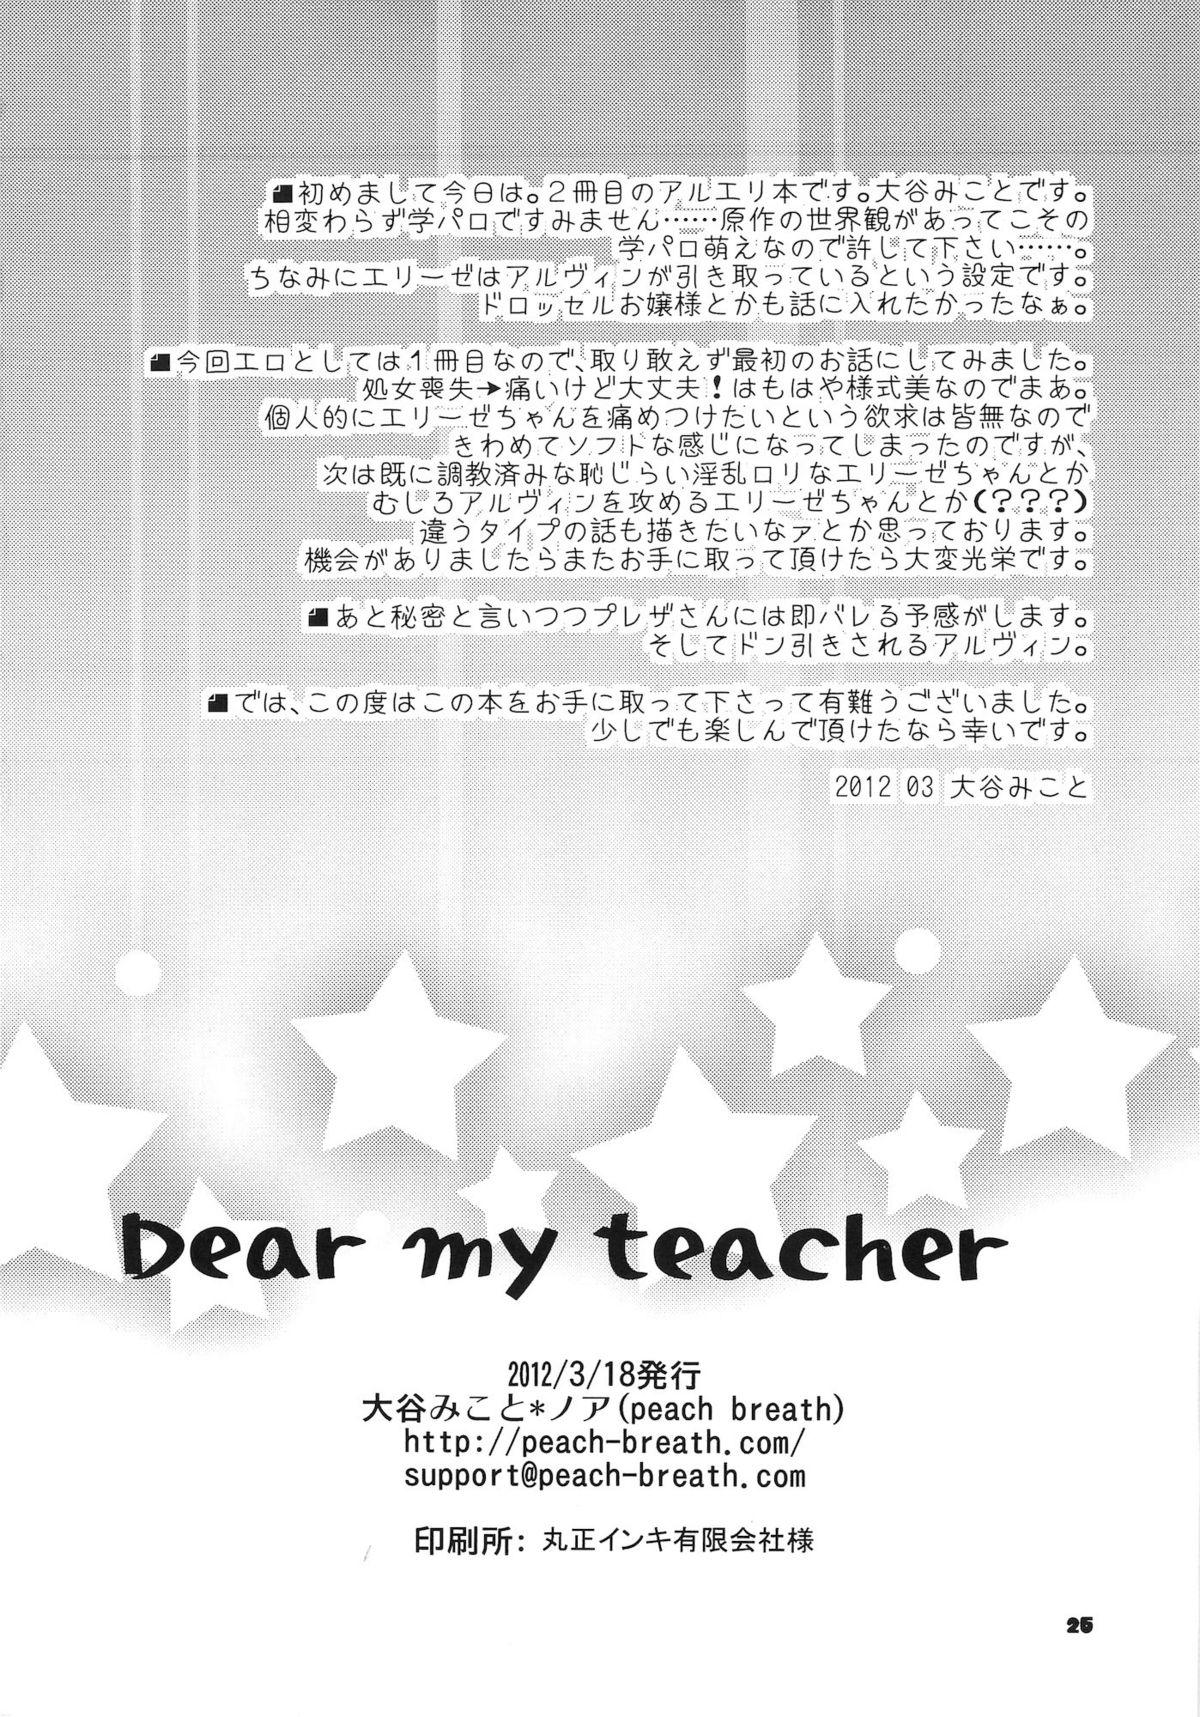 Dear my teacher 25